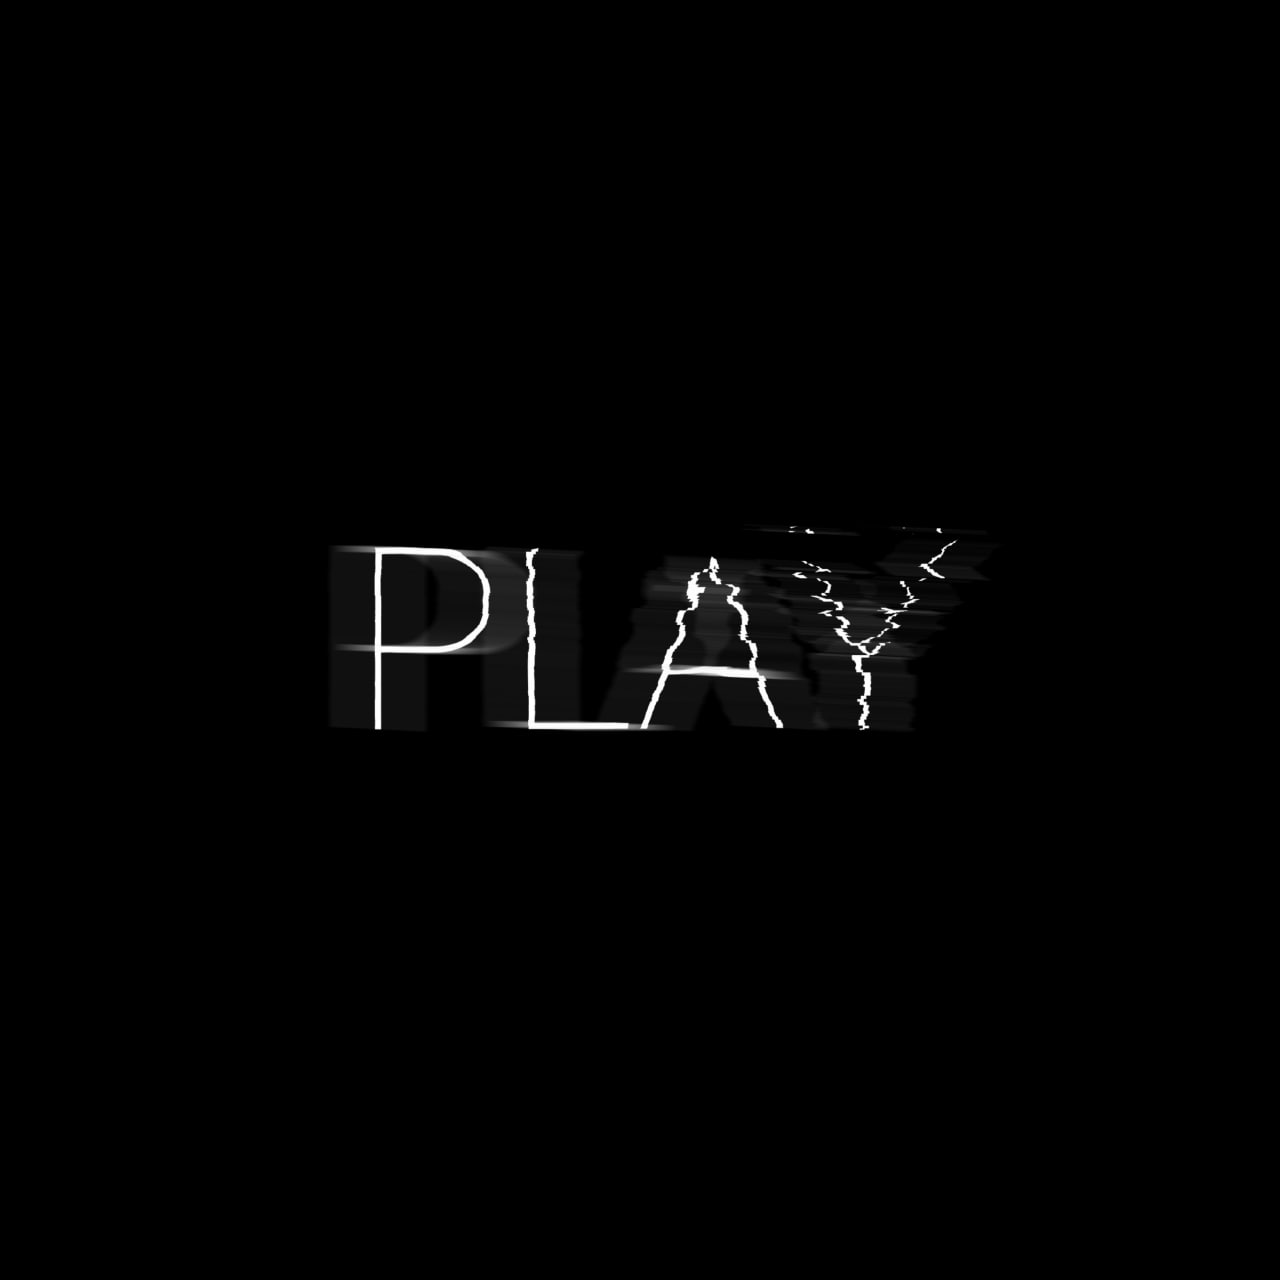 Gosha - Play(Original Mix)